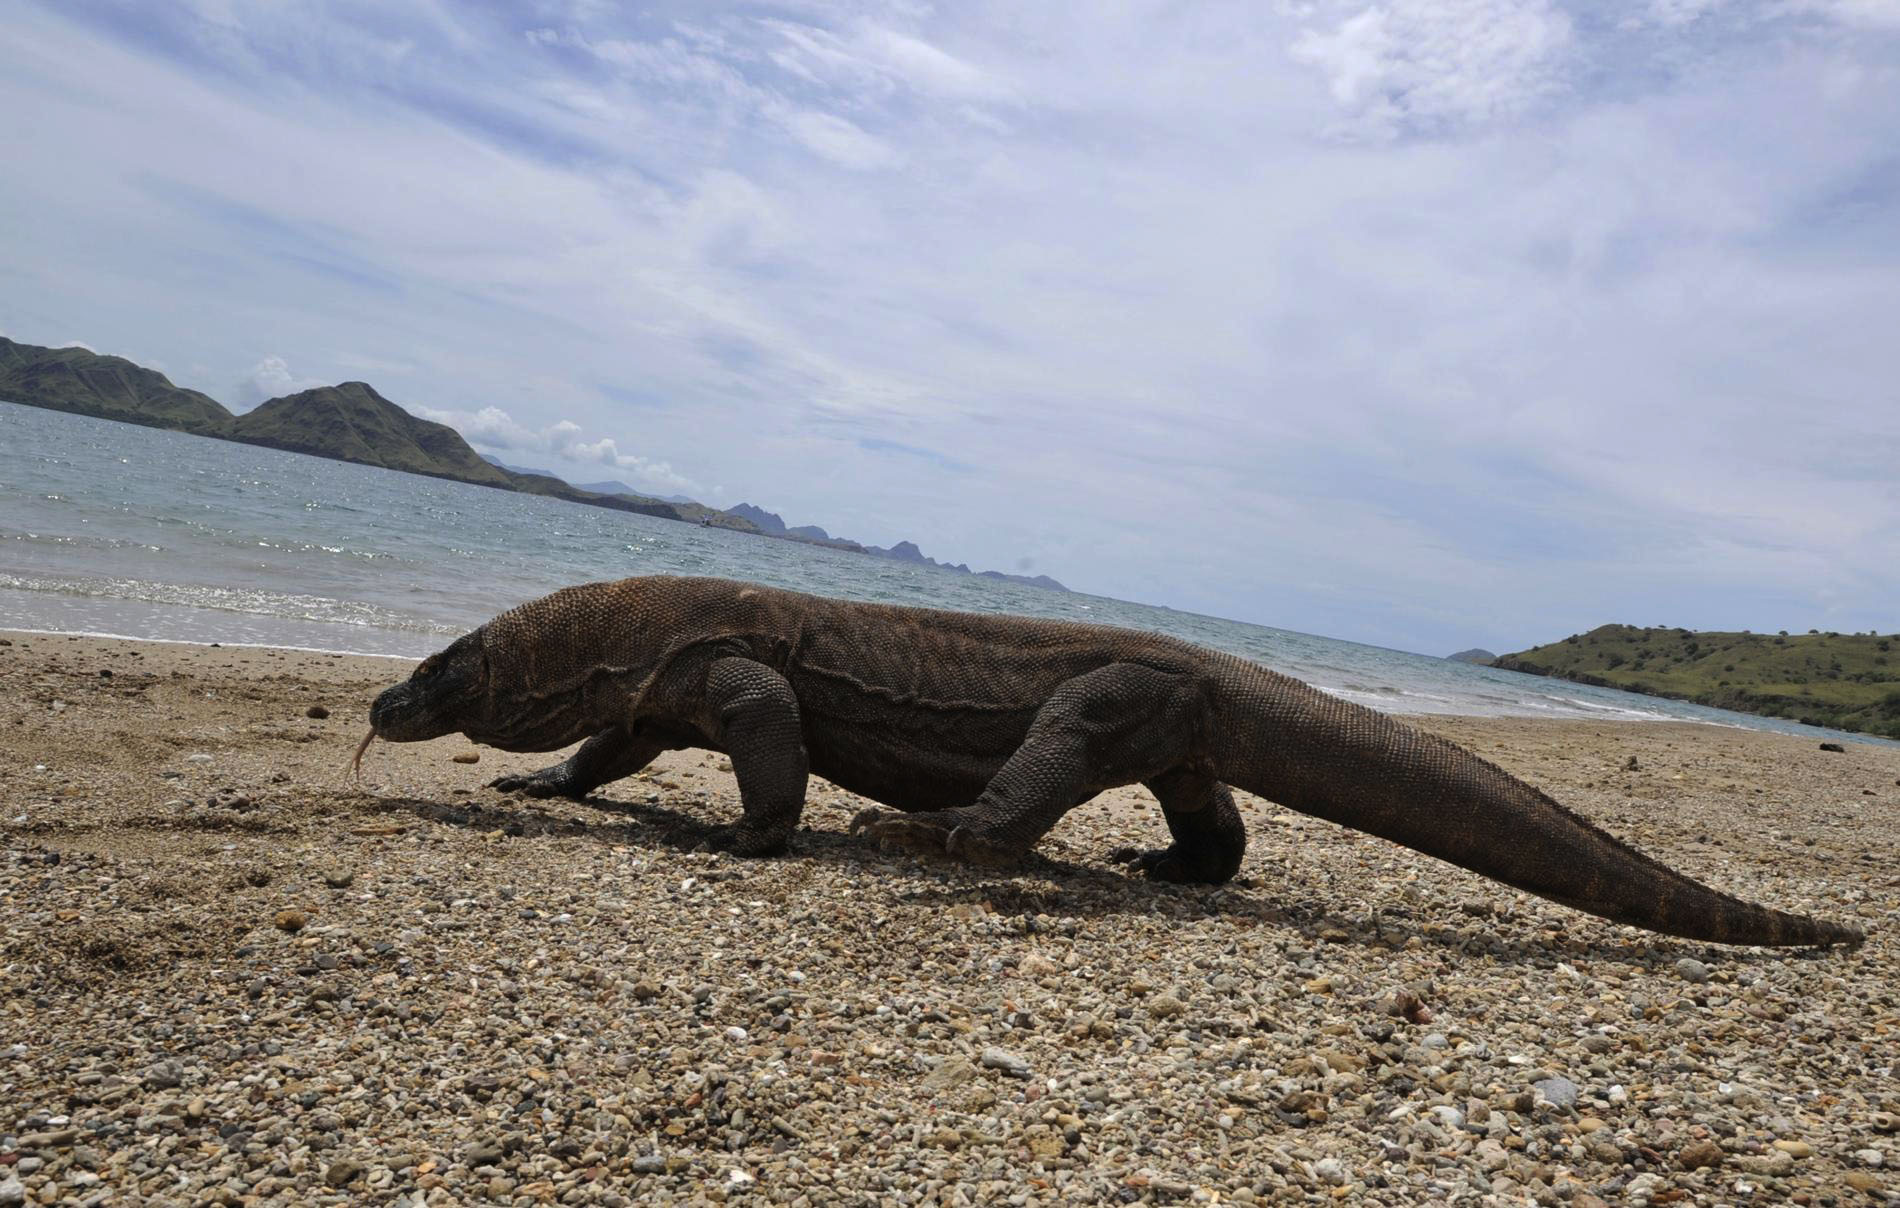 Самая большая ящерица в мире фото